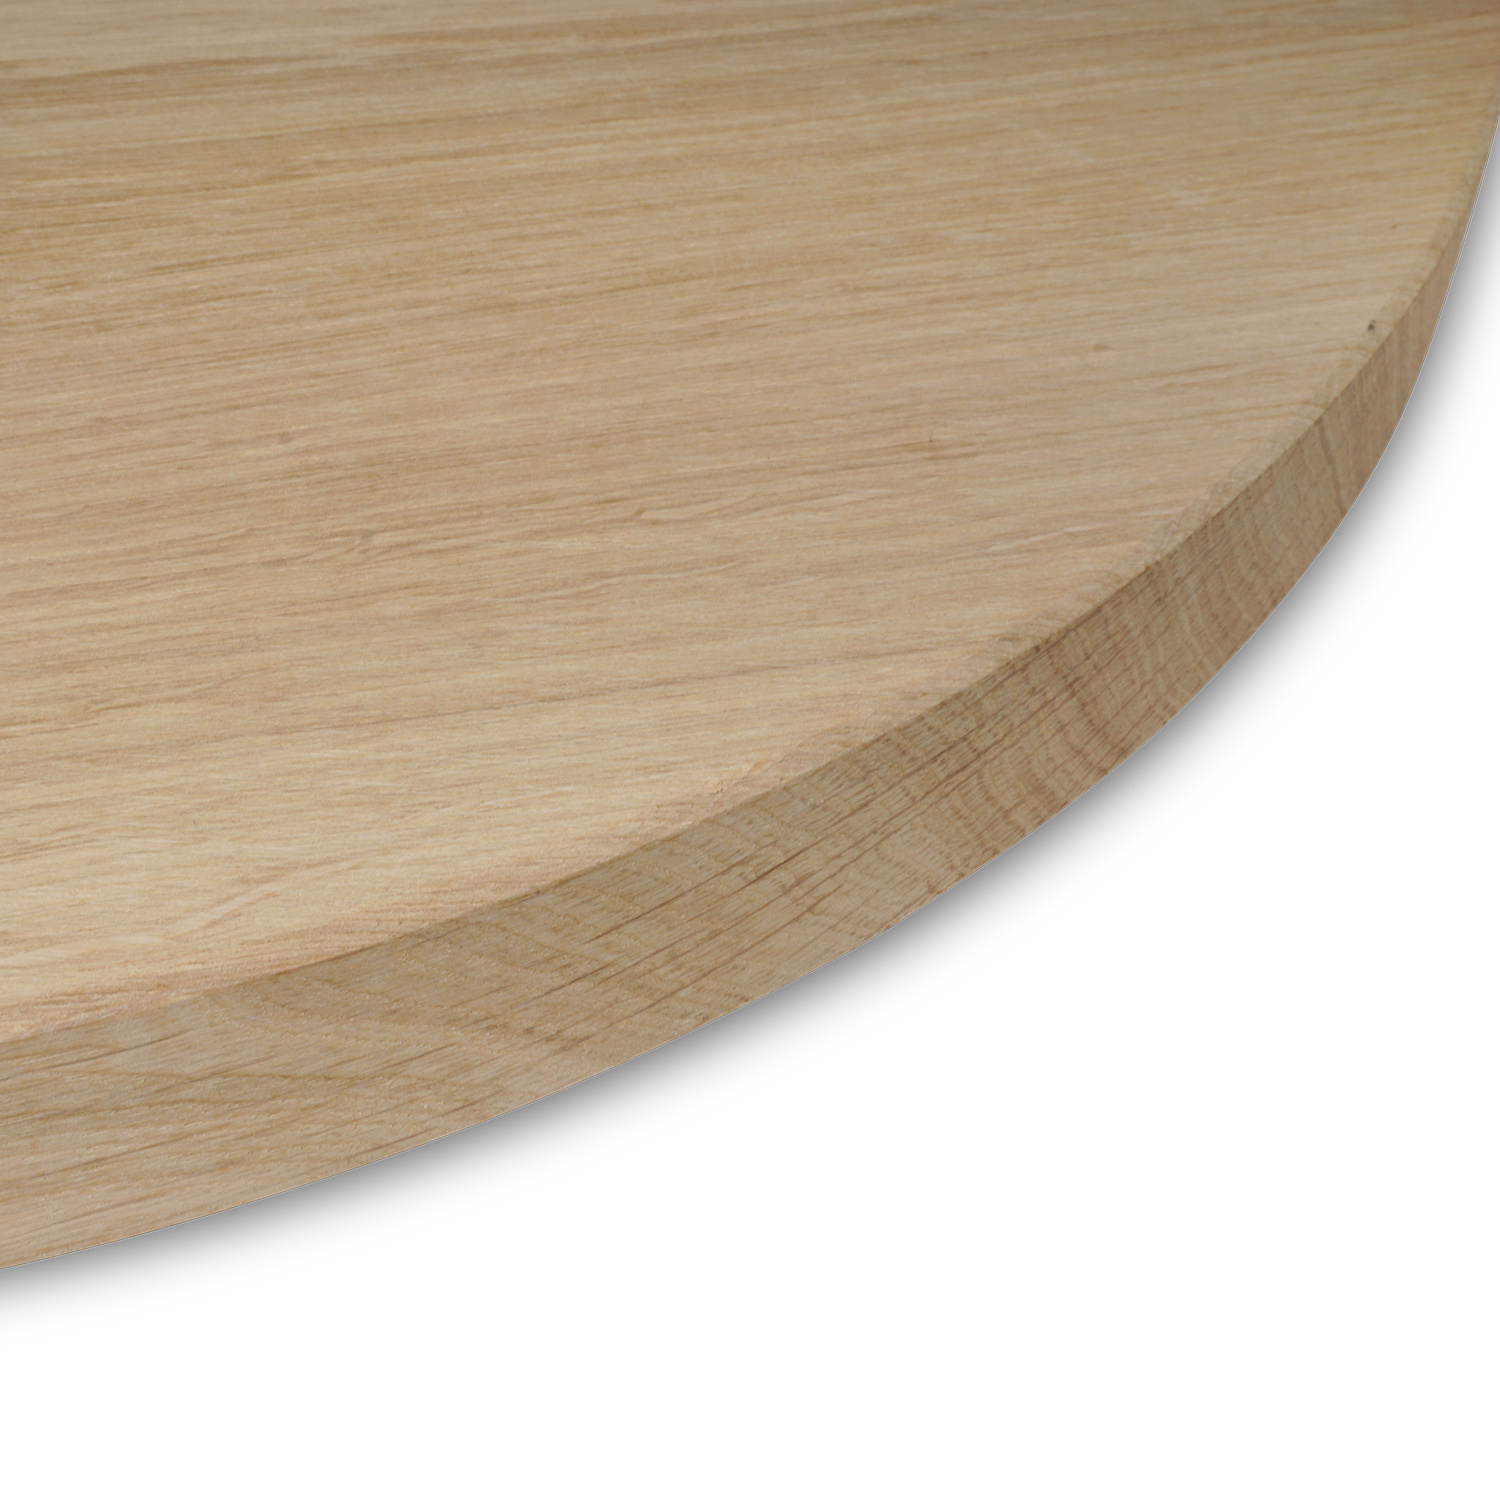  Tischplatte Eiche rund nach Maß - 2,7 cm dick (1-Schicht) - Breite Lamellen (10 - 12 cm breit) - Eichenholz A-Qualität - verleimt & künstlich getrocknet (HF 8-12%) - Durchmesser: 50 - 117 cm